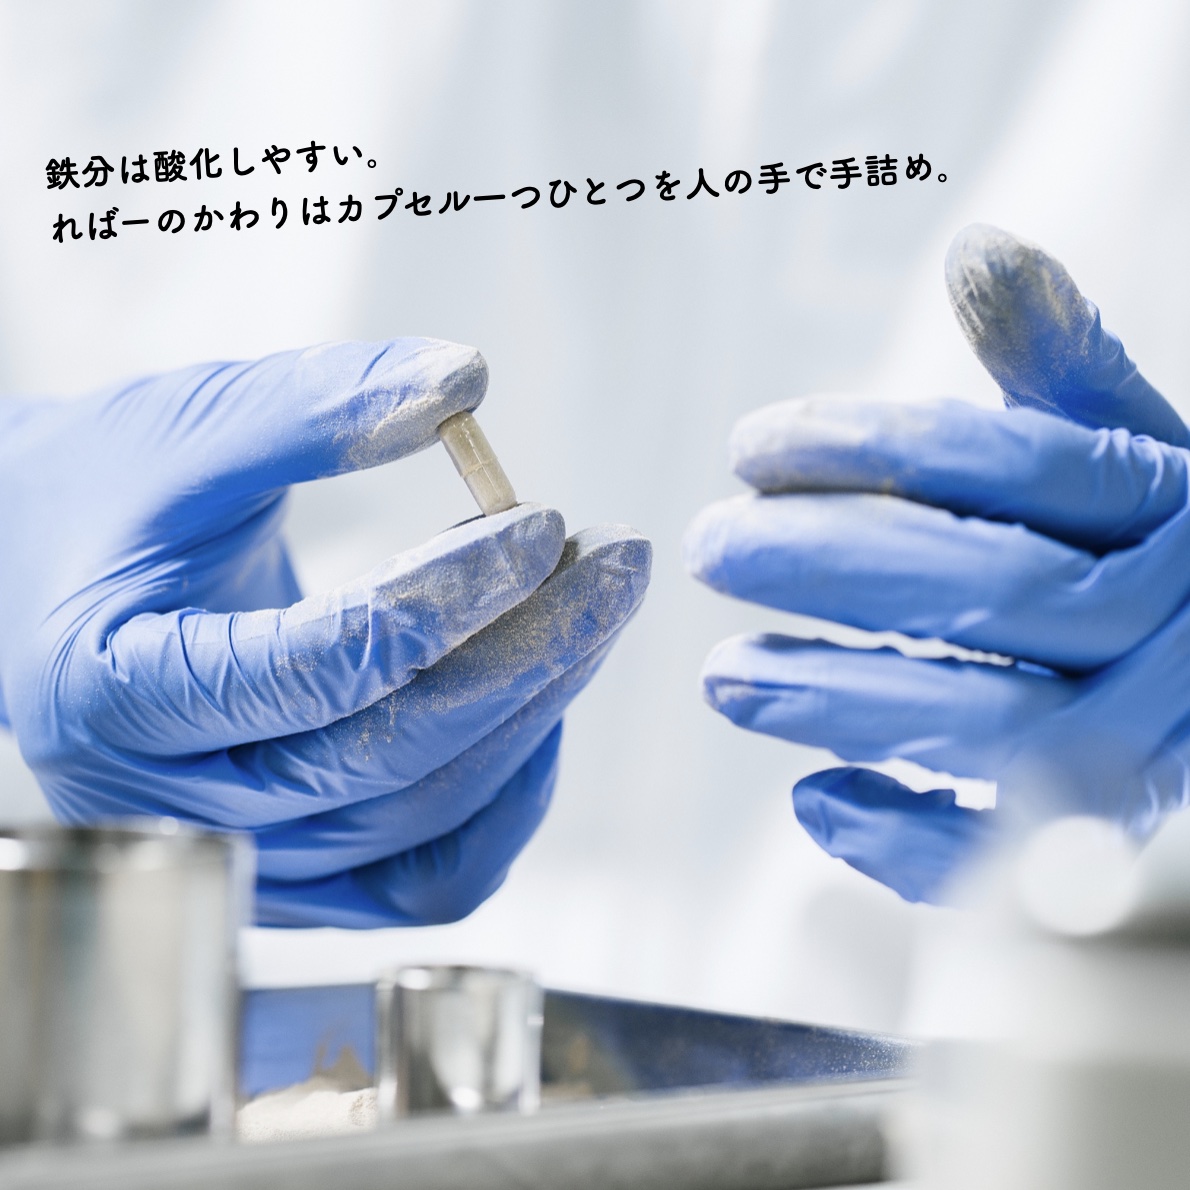 酸化防止対策としてカプセルに手詰めして作られている更年期専門店オアディスワンのヘム鉄サプリ「ればーのかわり」のイメージ